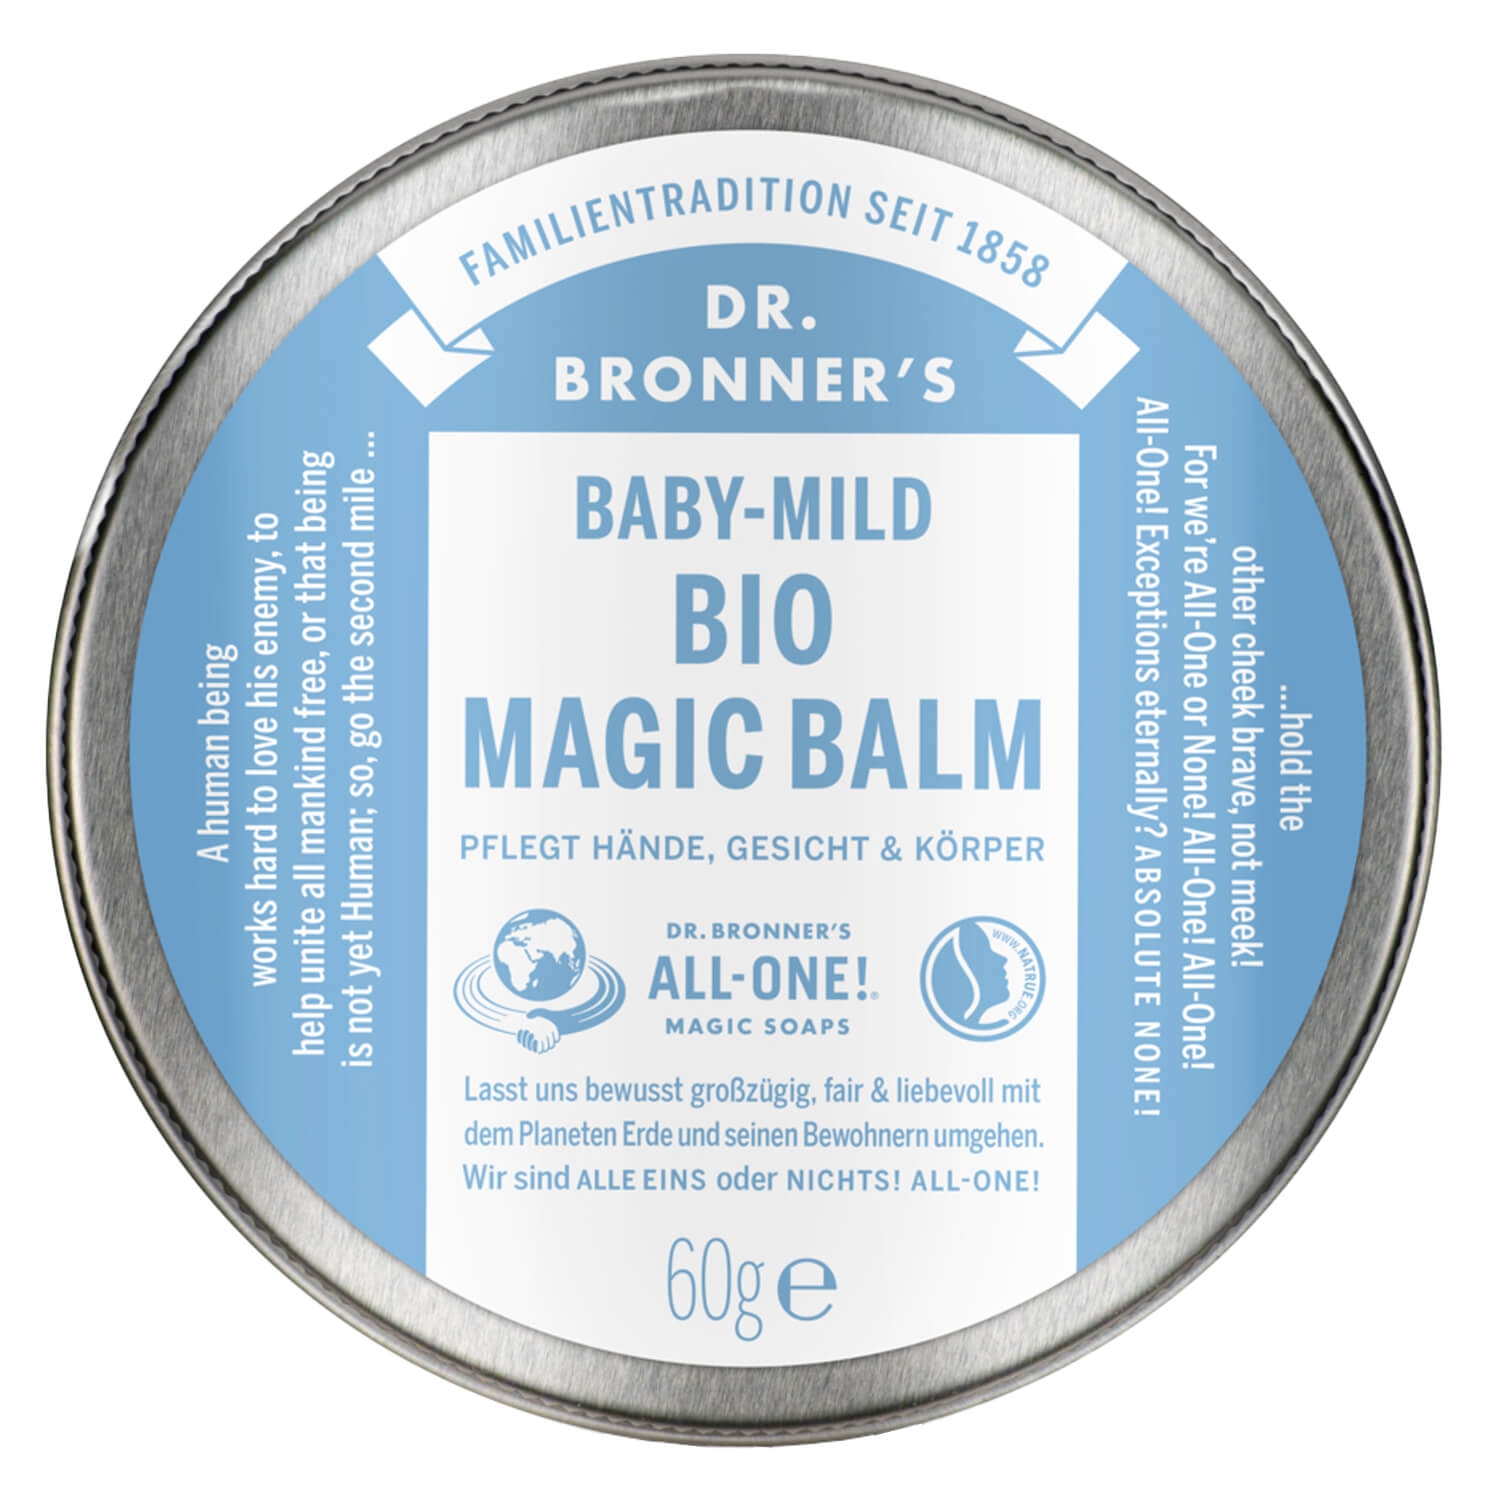 Produktbild von DR. BRONNER'S - Magic Balm Baby Mild